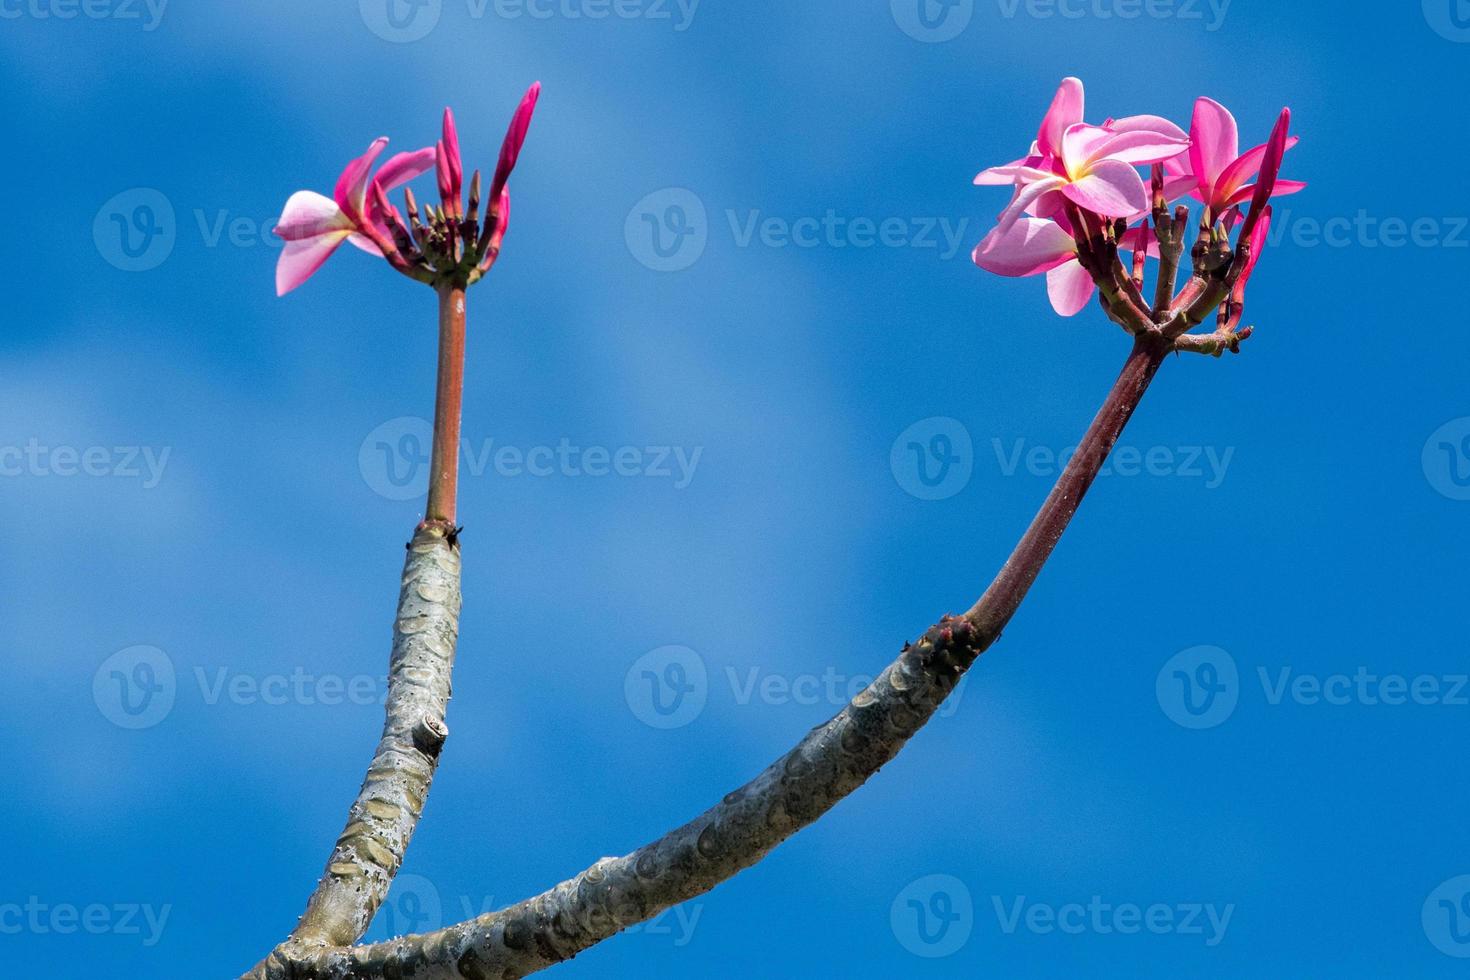 Frangipani flowers detail on deep blue sky background photo